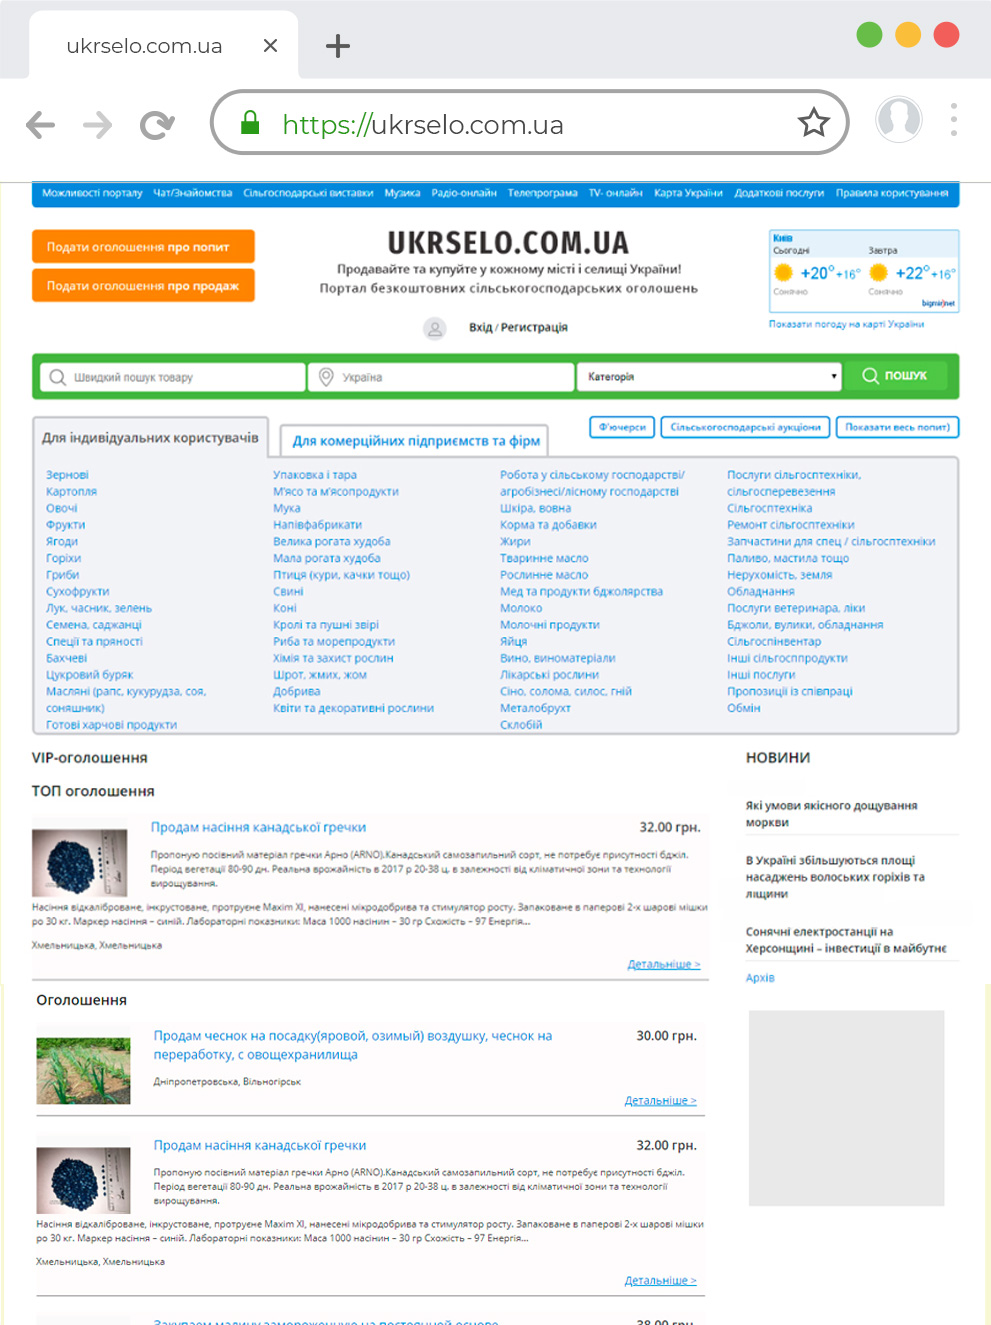 Доработка сайта на WordPress доска объявления ukrselo.com.ua